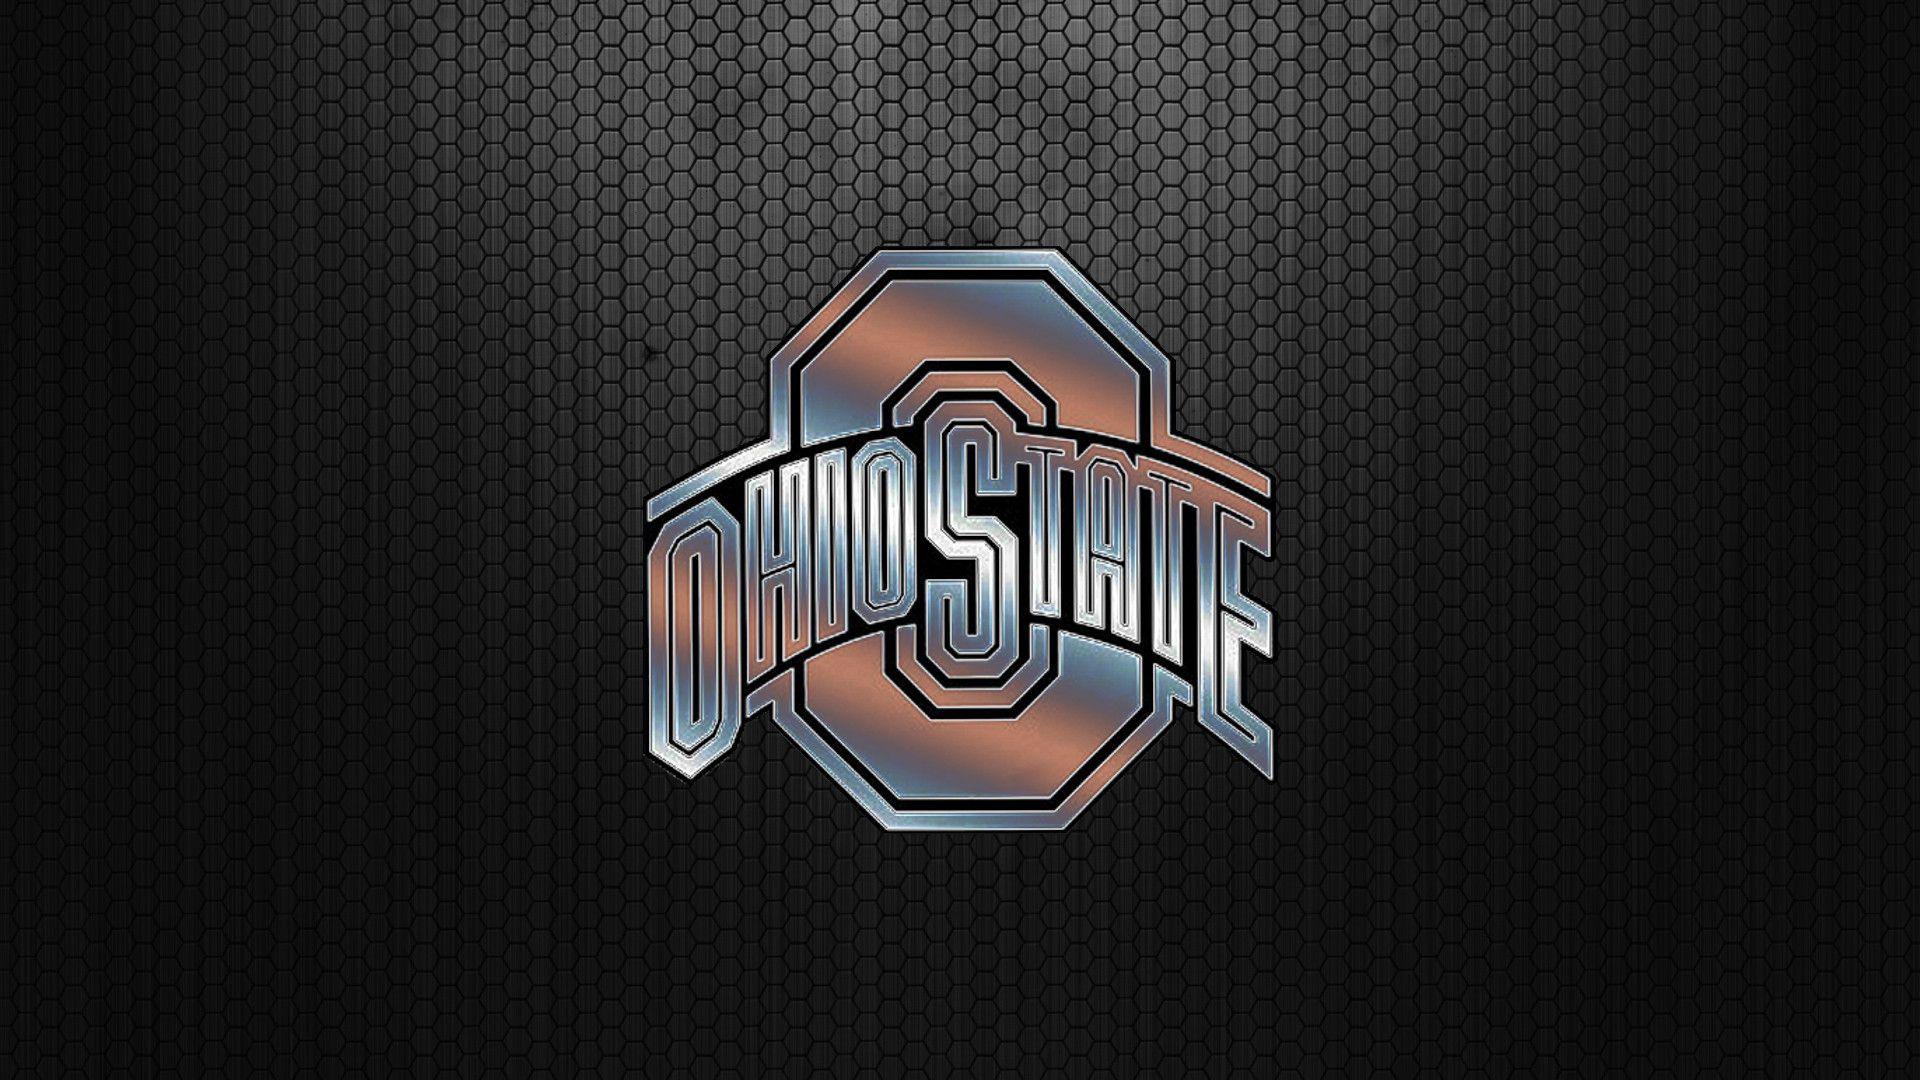 Ohio State University Wallpaper Full HDQ Ohio State. HD